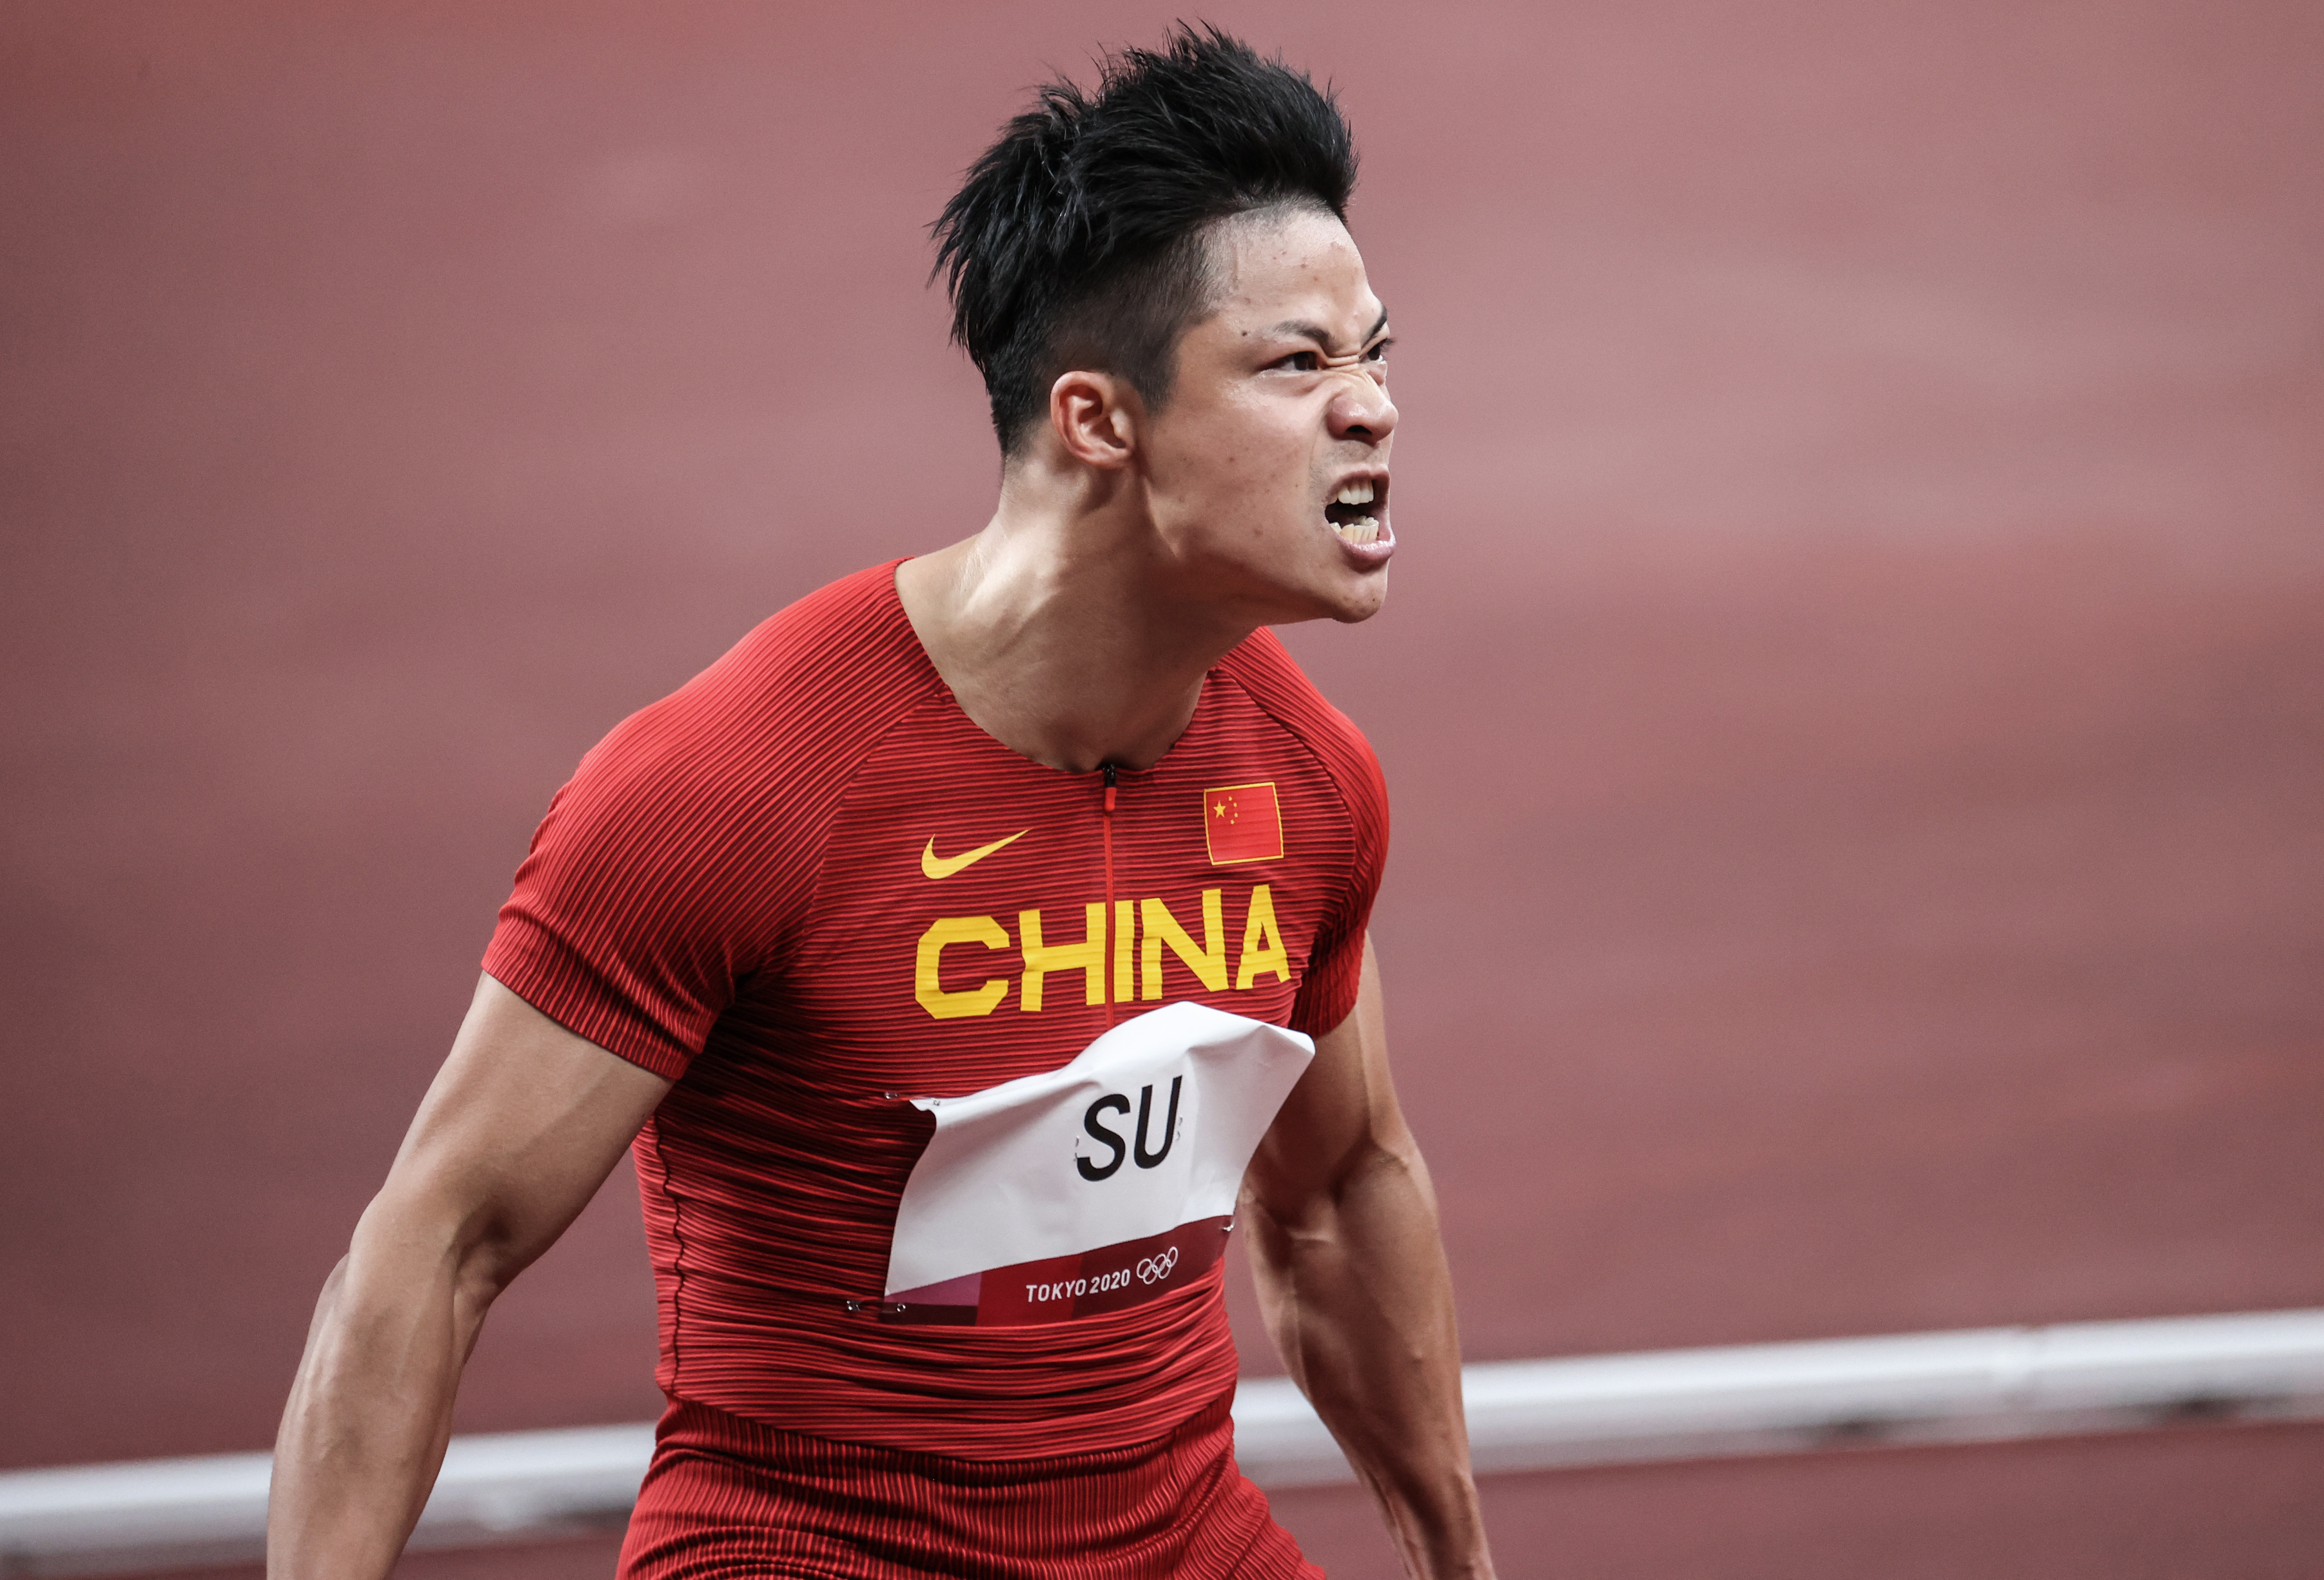 苏炳添的奥运铜牌来了:中国奥运健儿递补奖牌 颁奖仪式感动人心